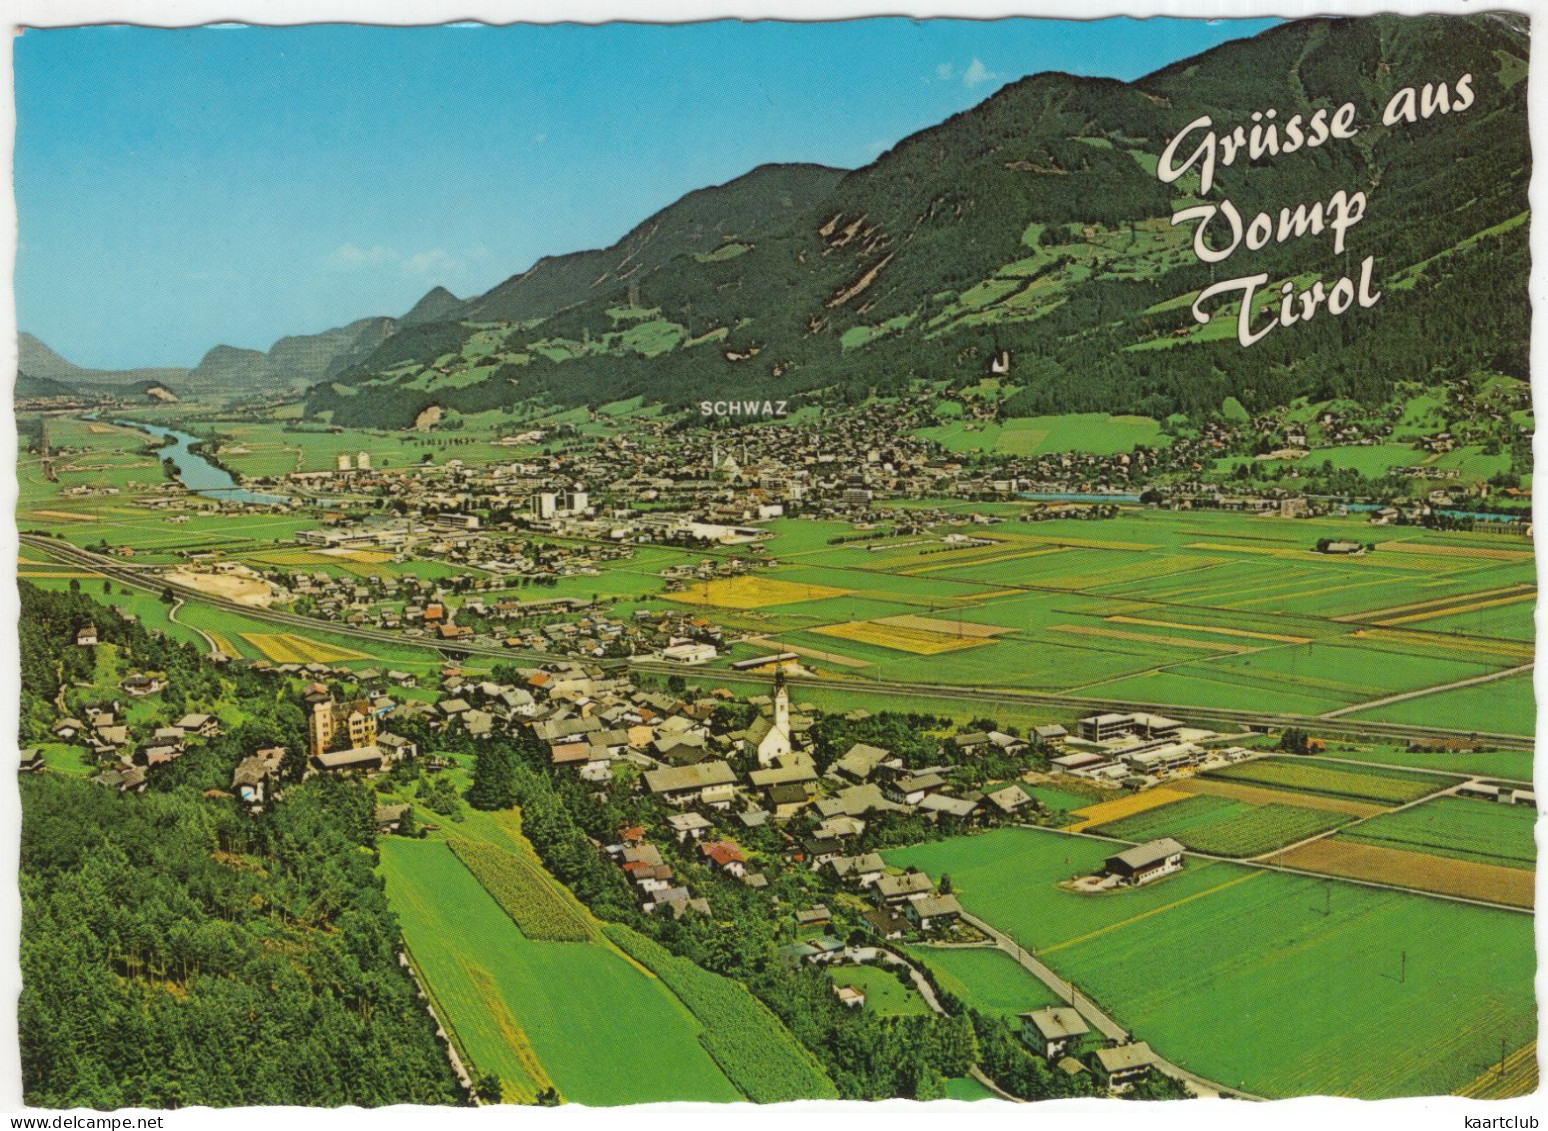 Grüsse Aus Vomp, Tirol - 566 M -  (Österreich,Austria) - Alpine Luftbild - Vomp